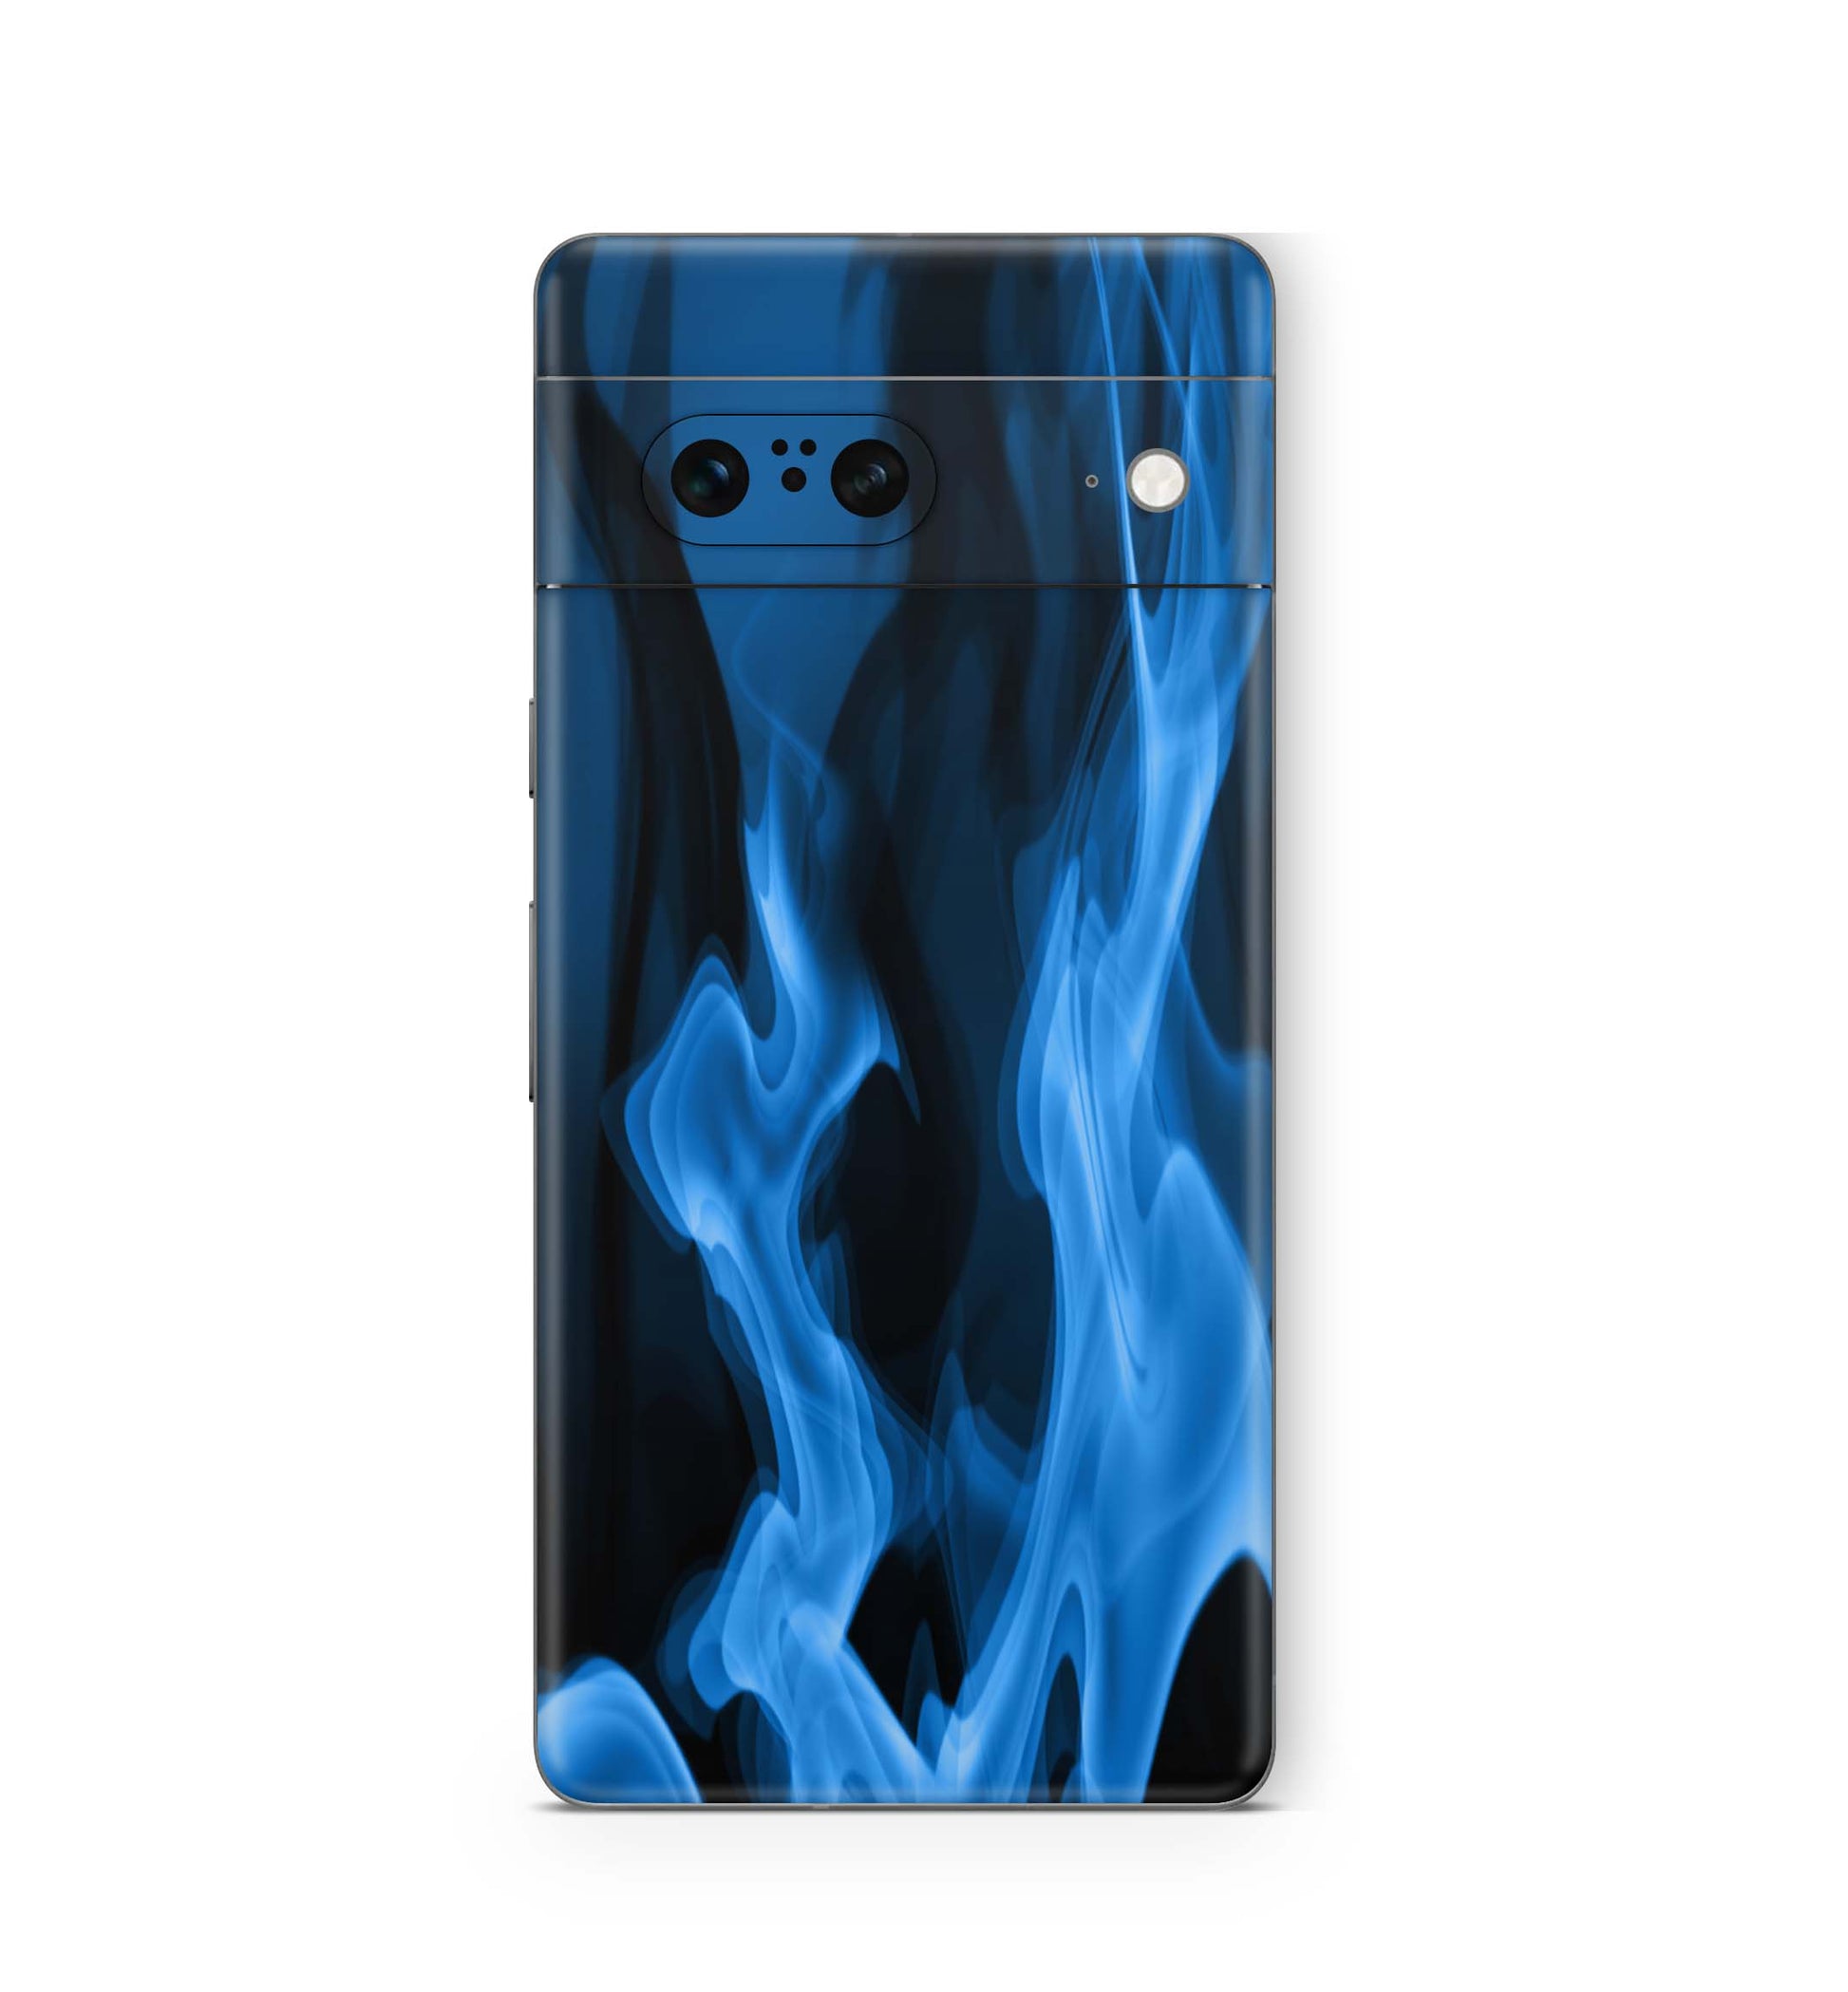 Google Pixel 6a Skin Design Vinyl Premium Aufkleber Schutzfolie Flammen blau Aufkleber Skins4u   